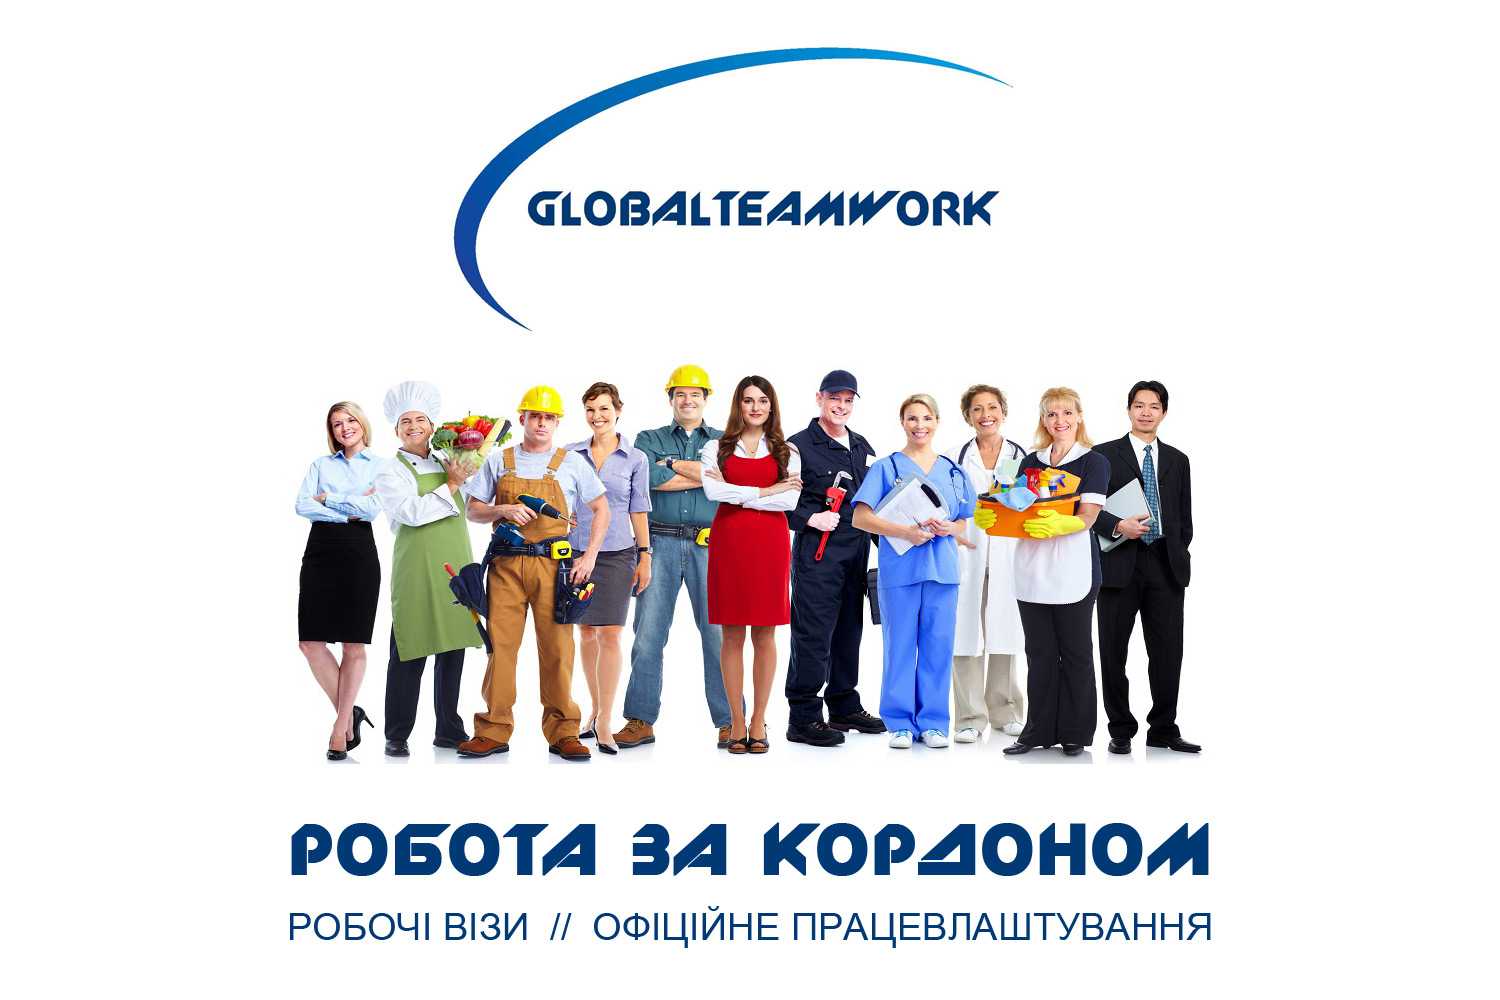 Топ 10 сайтов для поиска работы в эстонии - все курсы онлайн